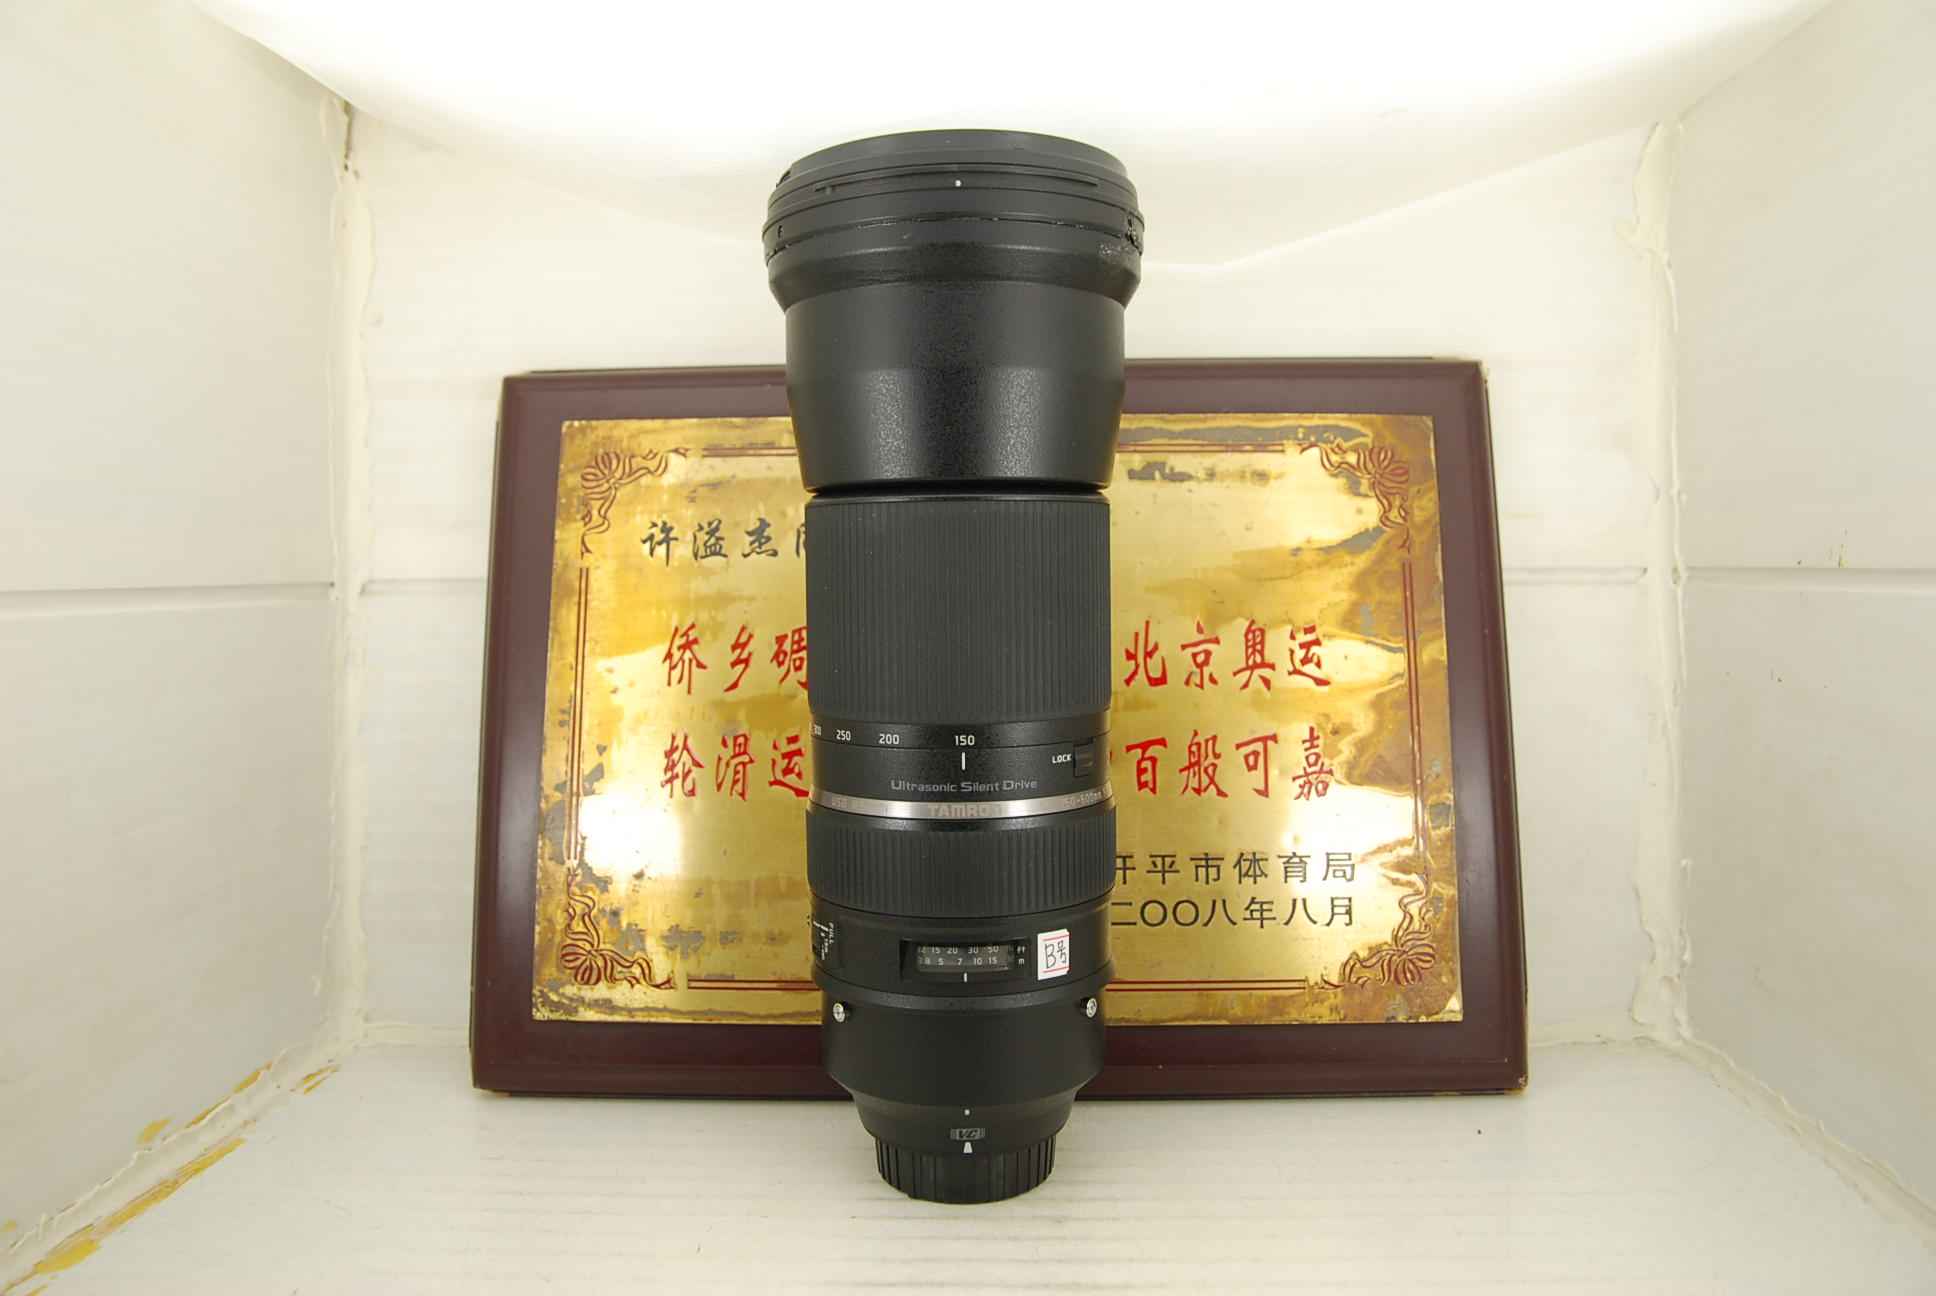 尼康口 腾龙 150-600 F5-6.3 VC USD A011 超长焦单反镜头 防抖